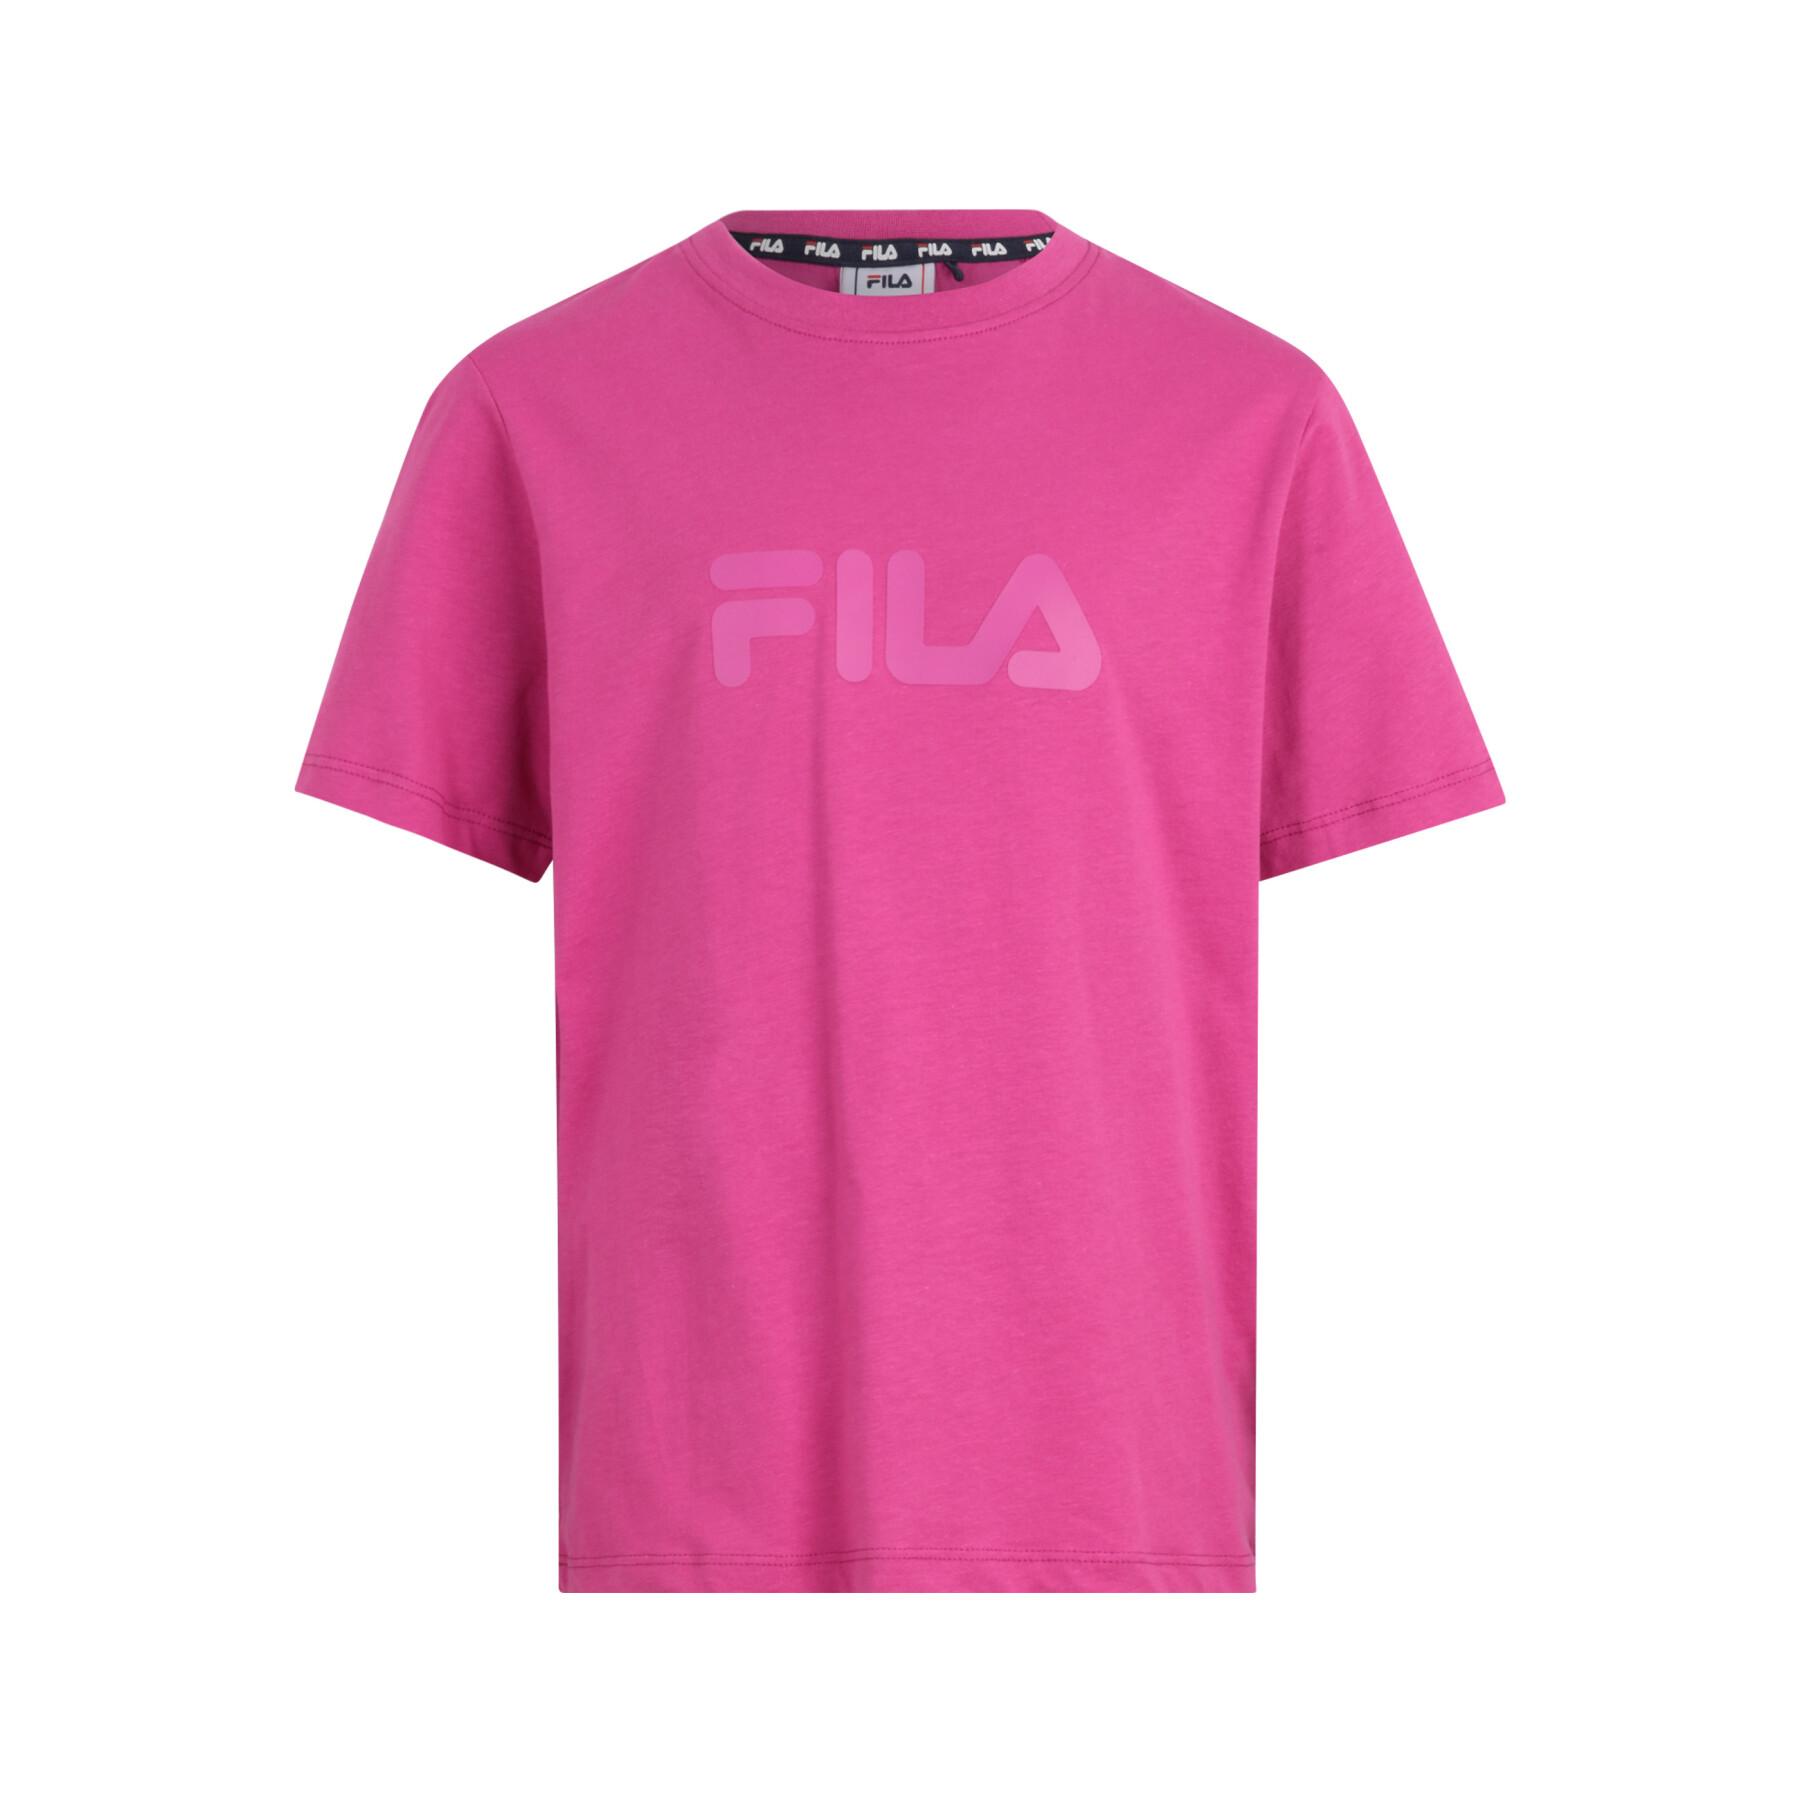 T-shirt de criança Fila Solberg Classic Logo